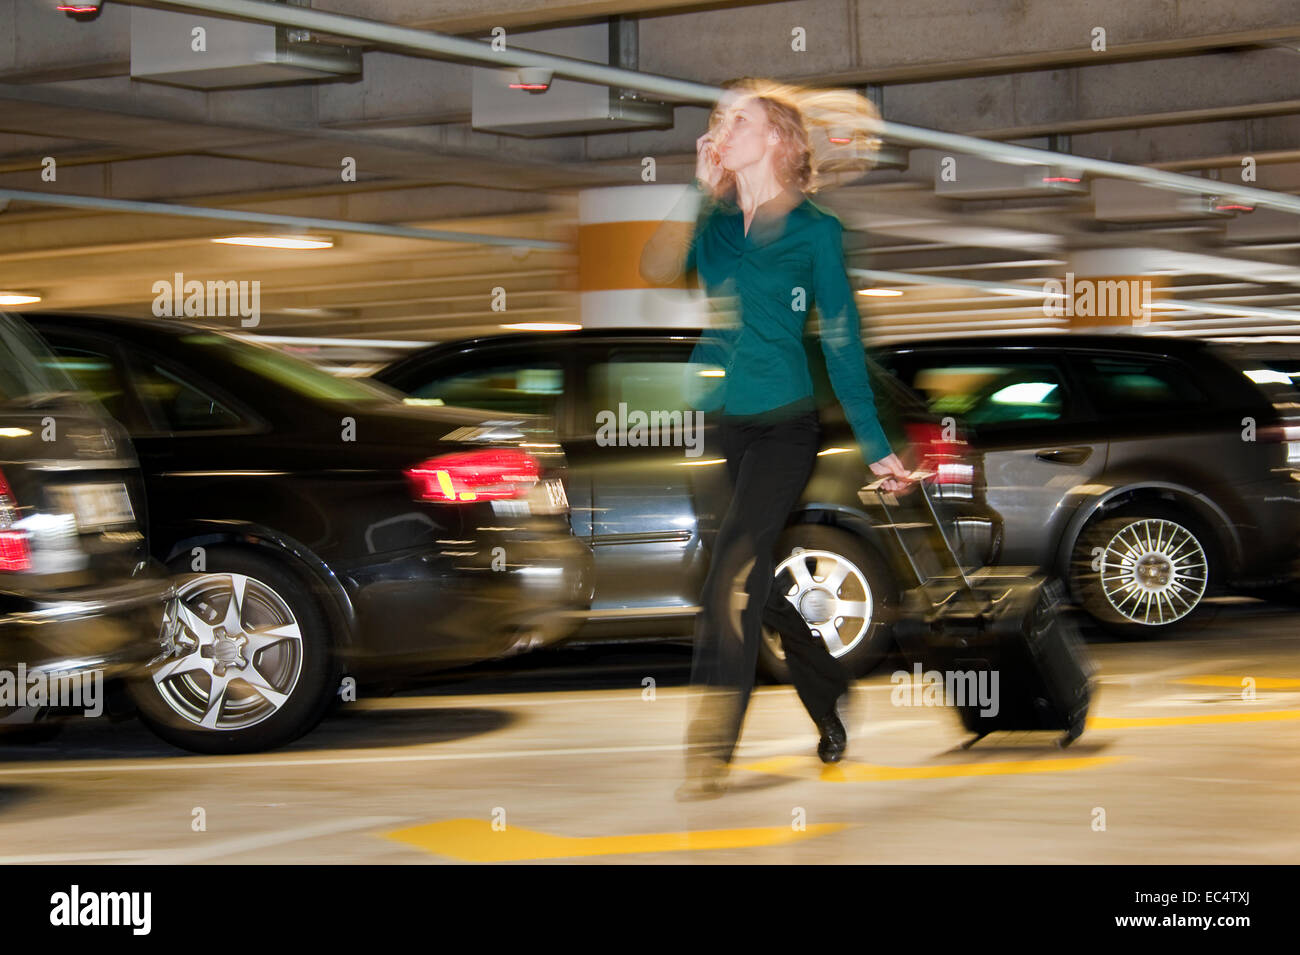 Jeune femme avec une valise roulant dans un parking couvert Banque D'Images